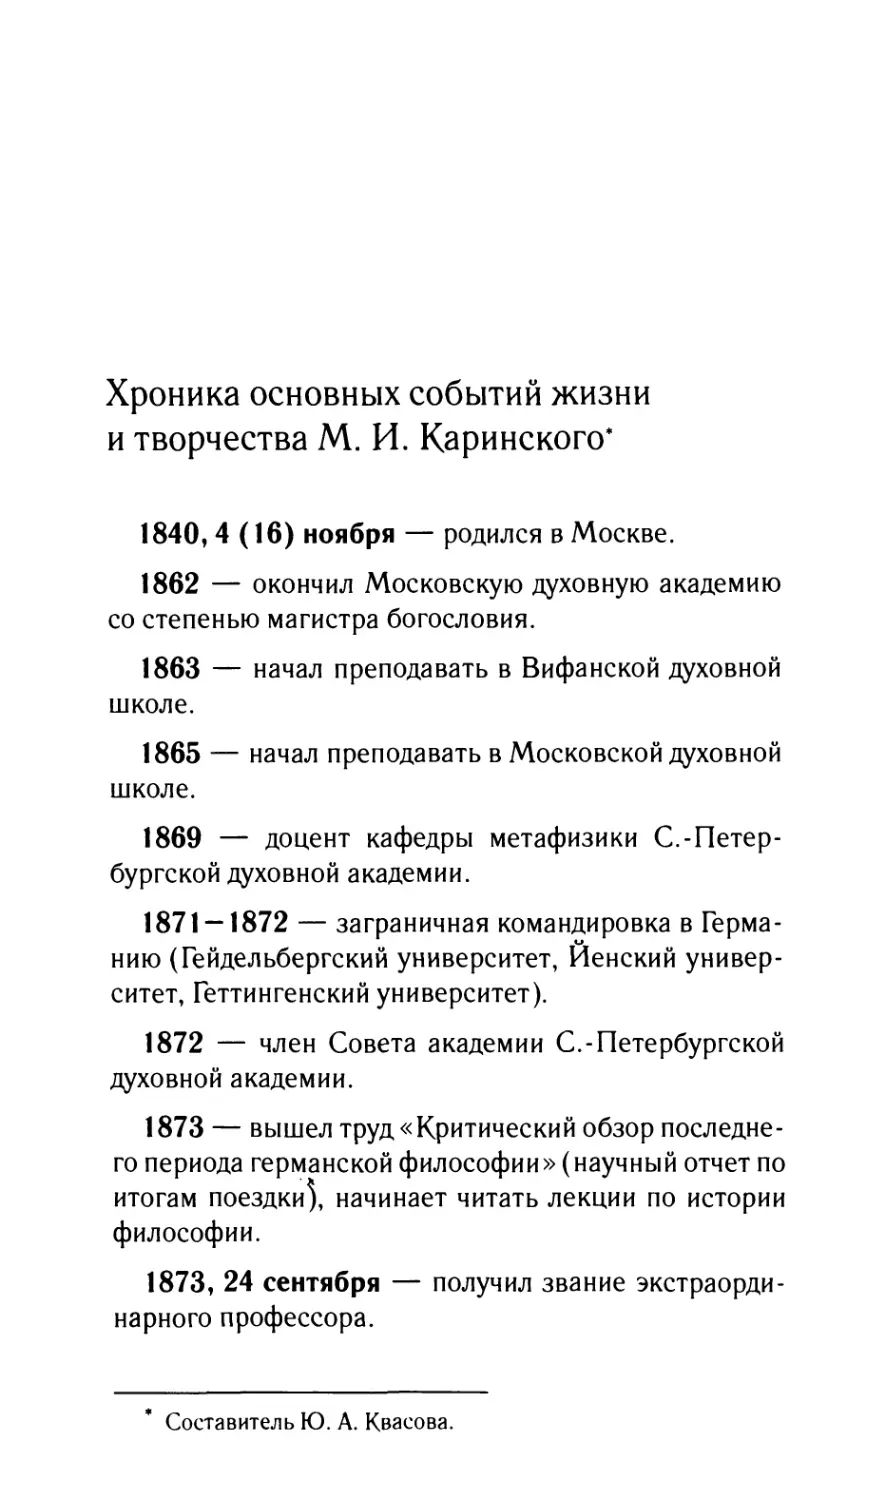 Хроника основных событий жизни и творчества М.И. Каринского